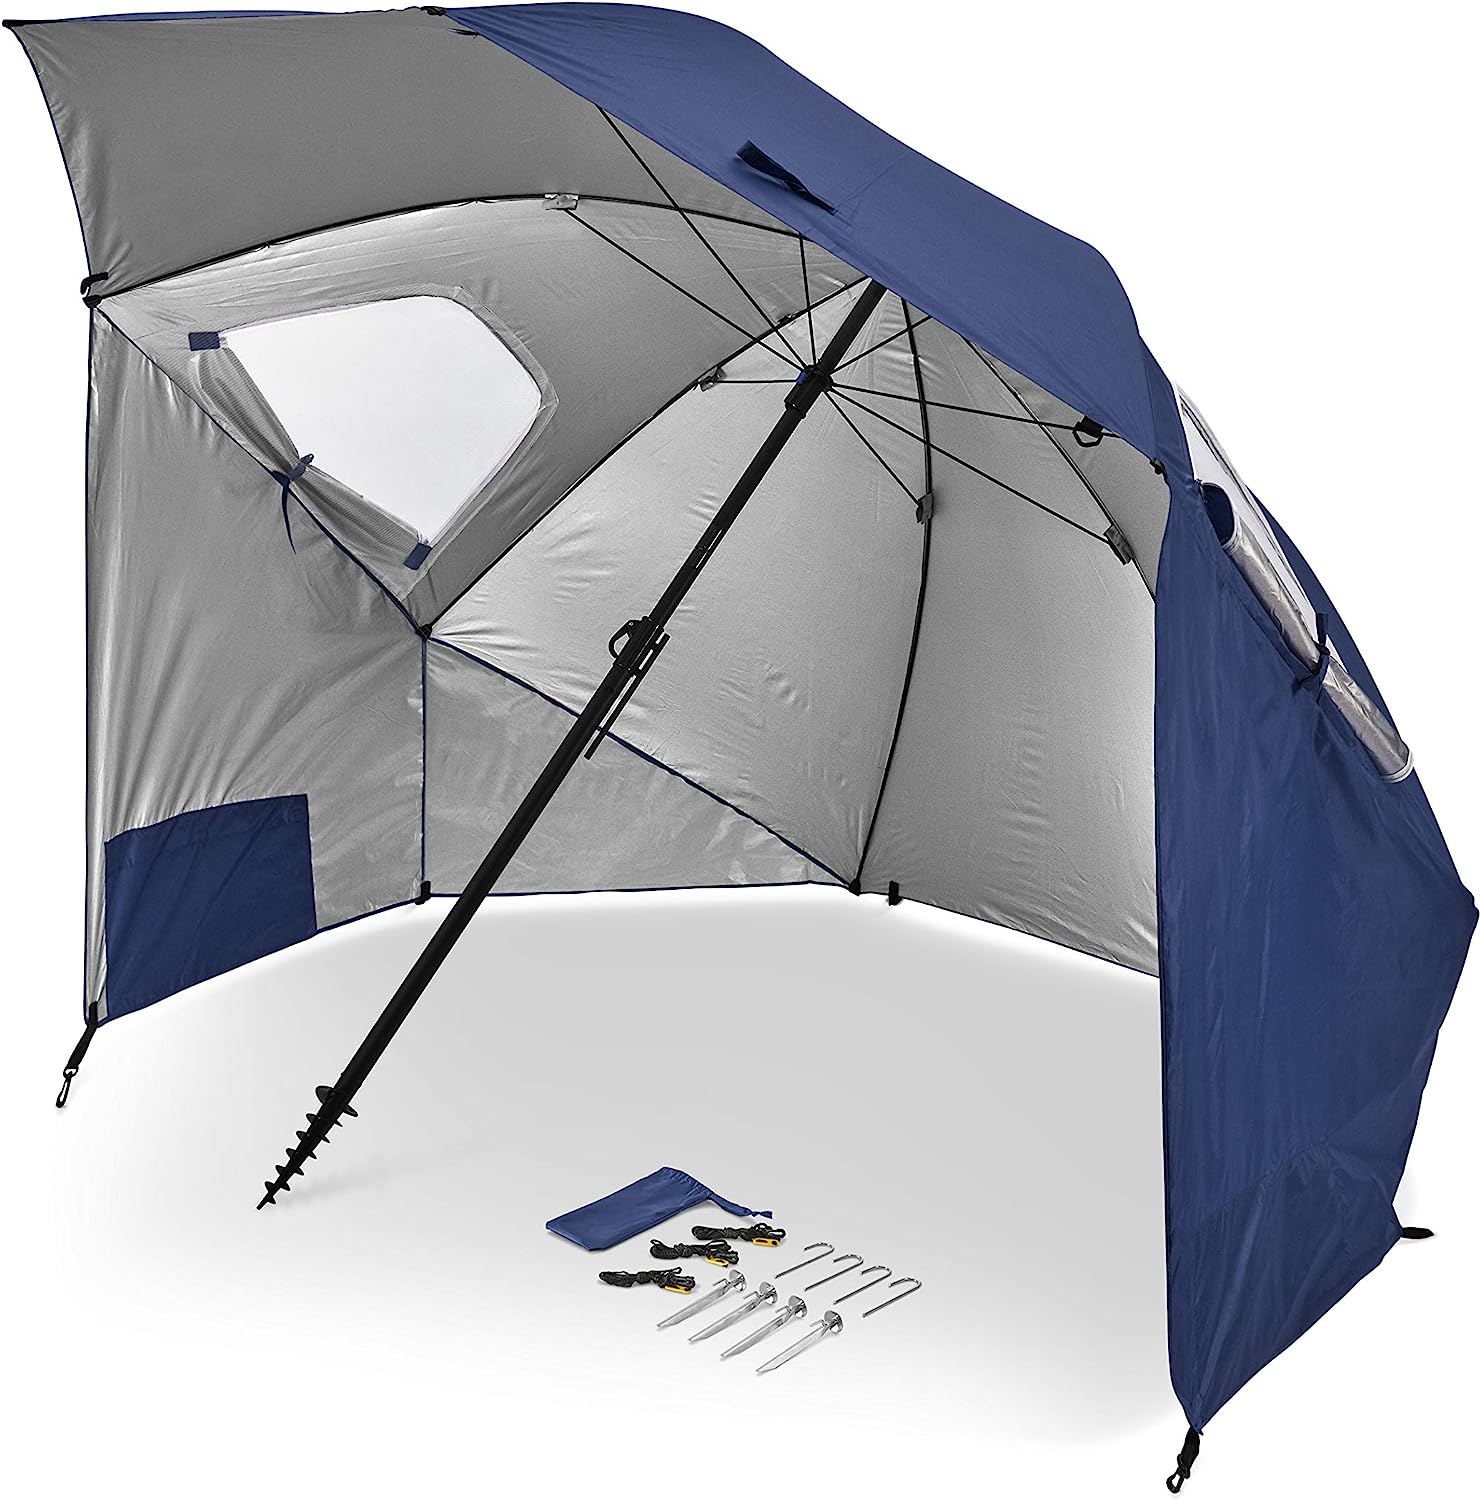 Sport-Brella Premiere XL UPF 50+ Umbrella Shelter for [...]